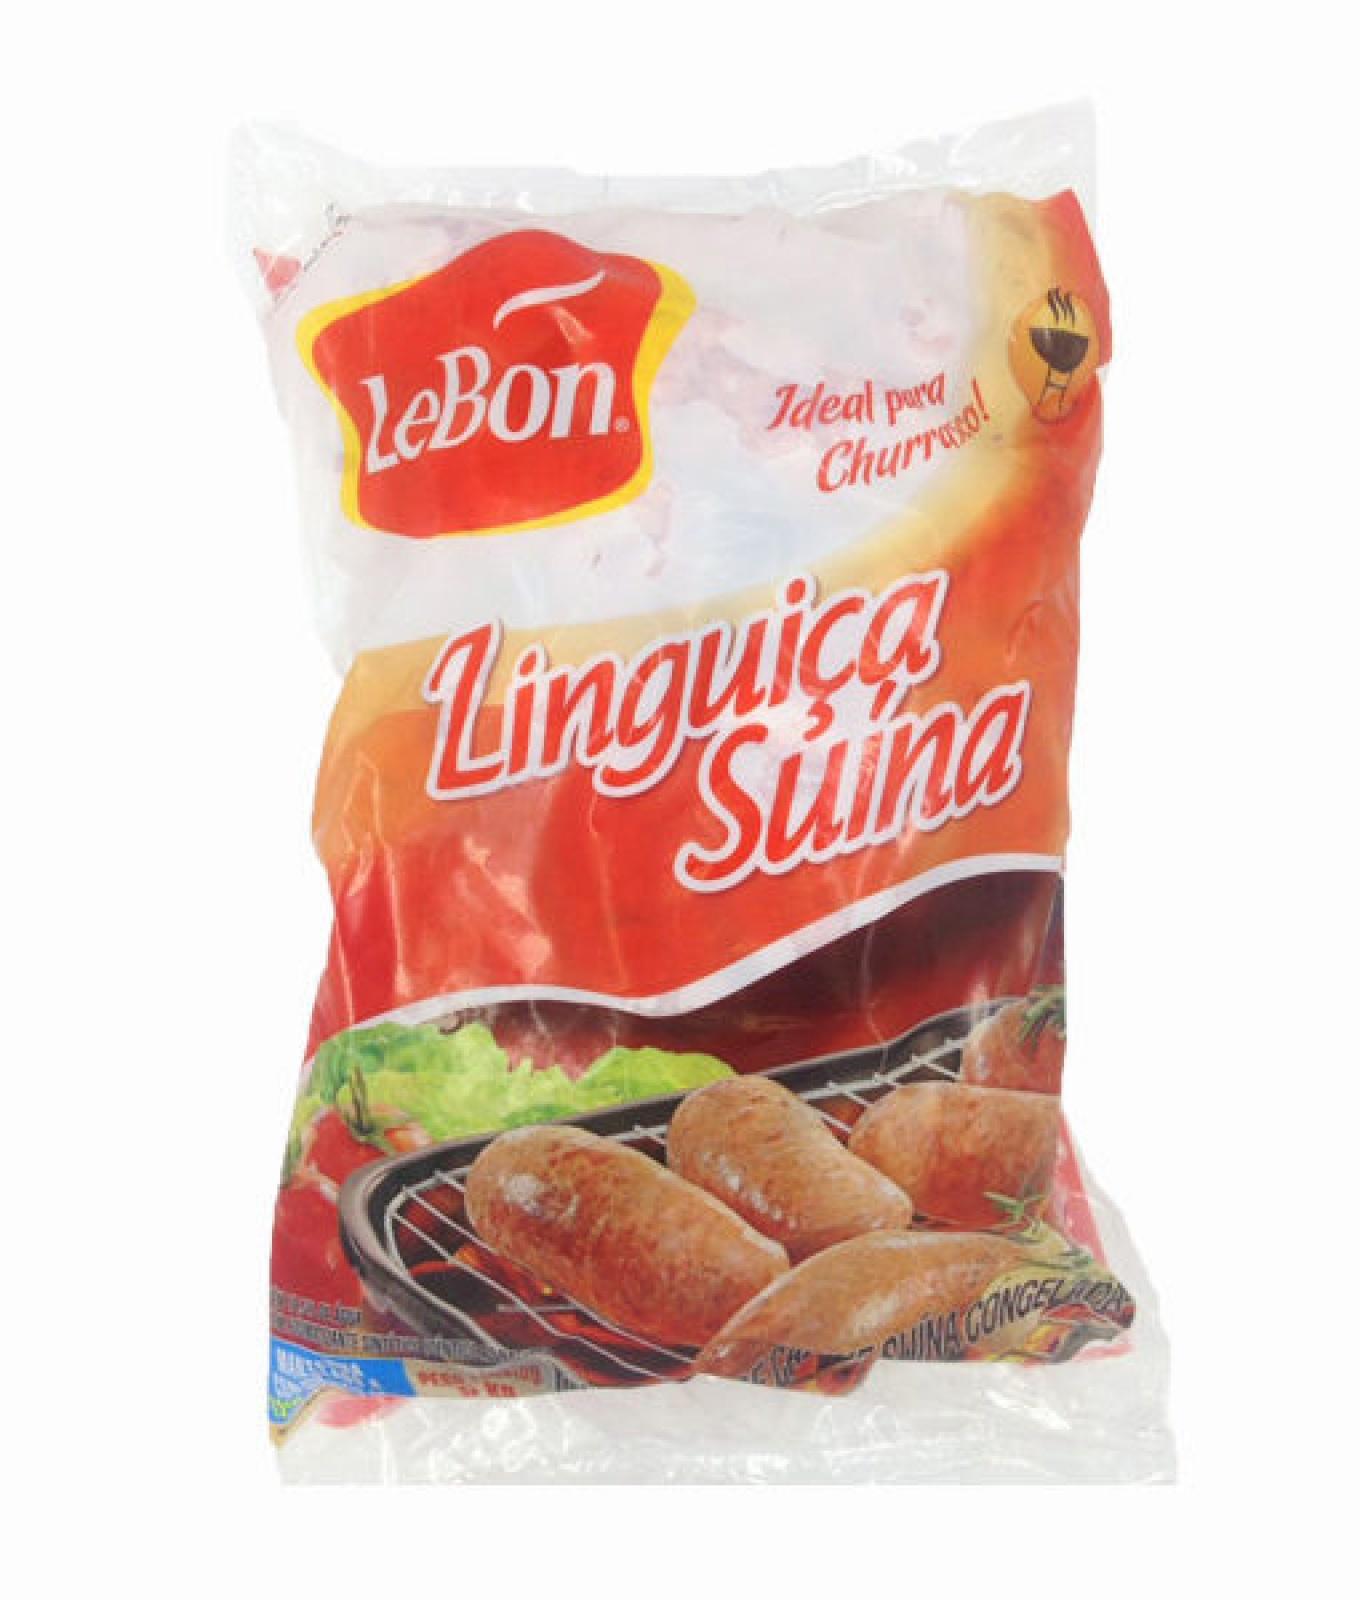 Linguiça Suína cong. 5kg